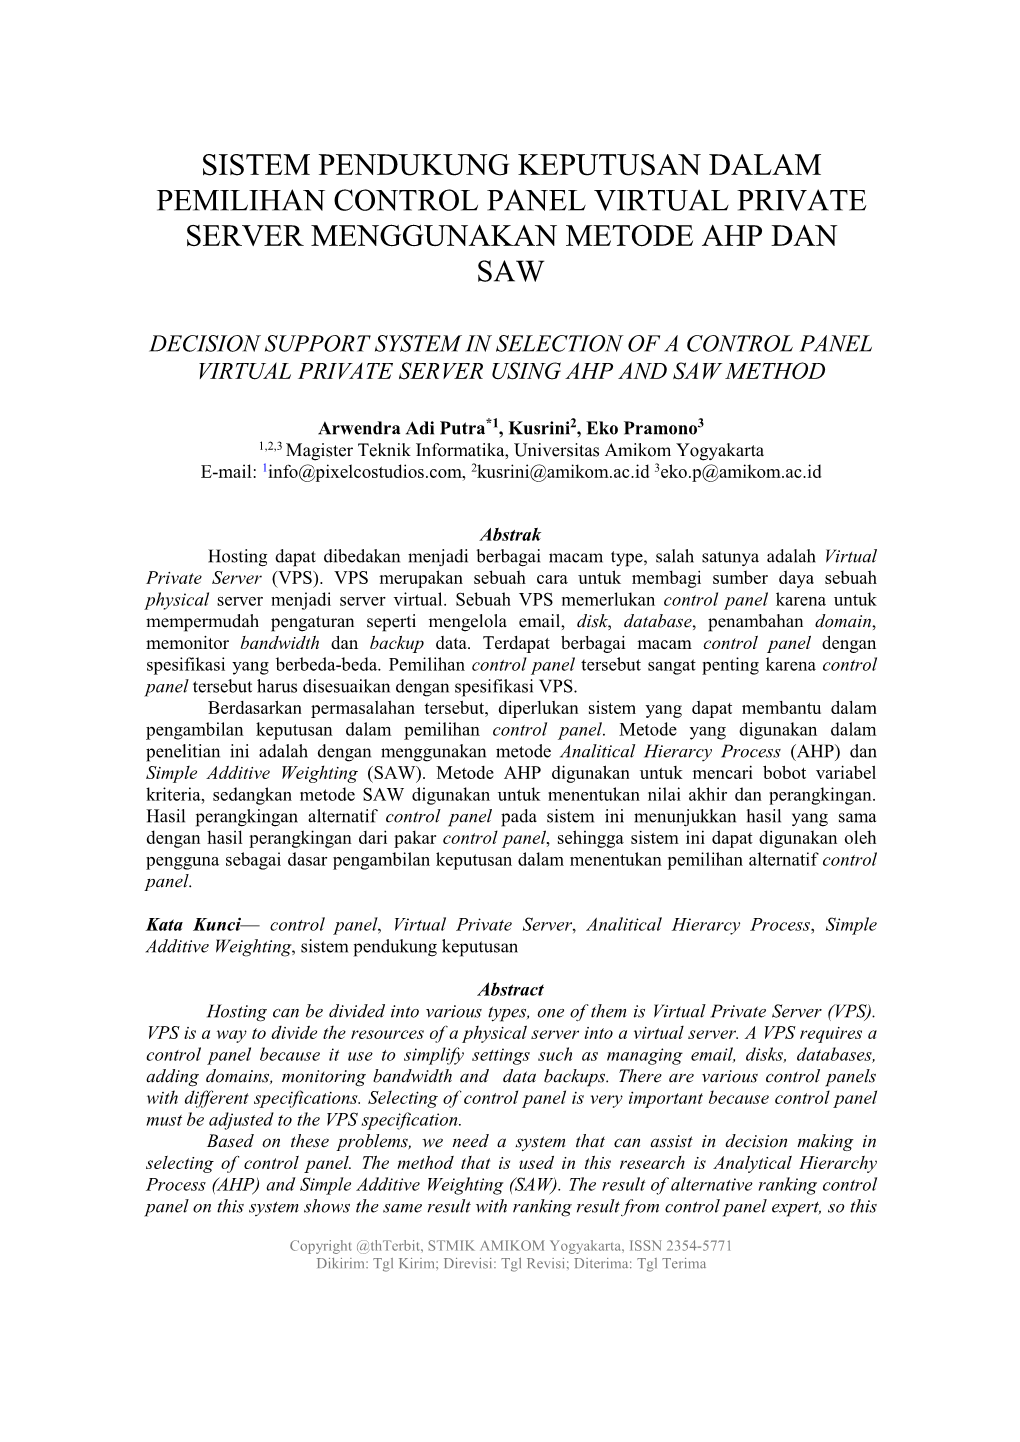 Sistem Pendukung Keputusan Dalam Pemilihan Control Panel Virtual Private Server Menggunakan Metode Ahp Dan Saw